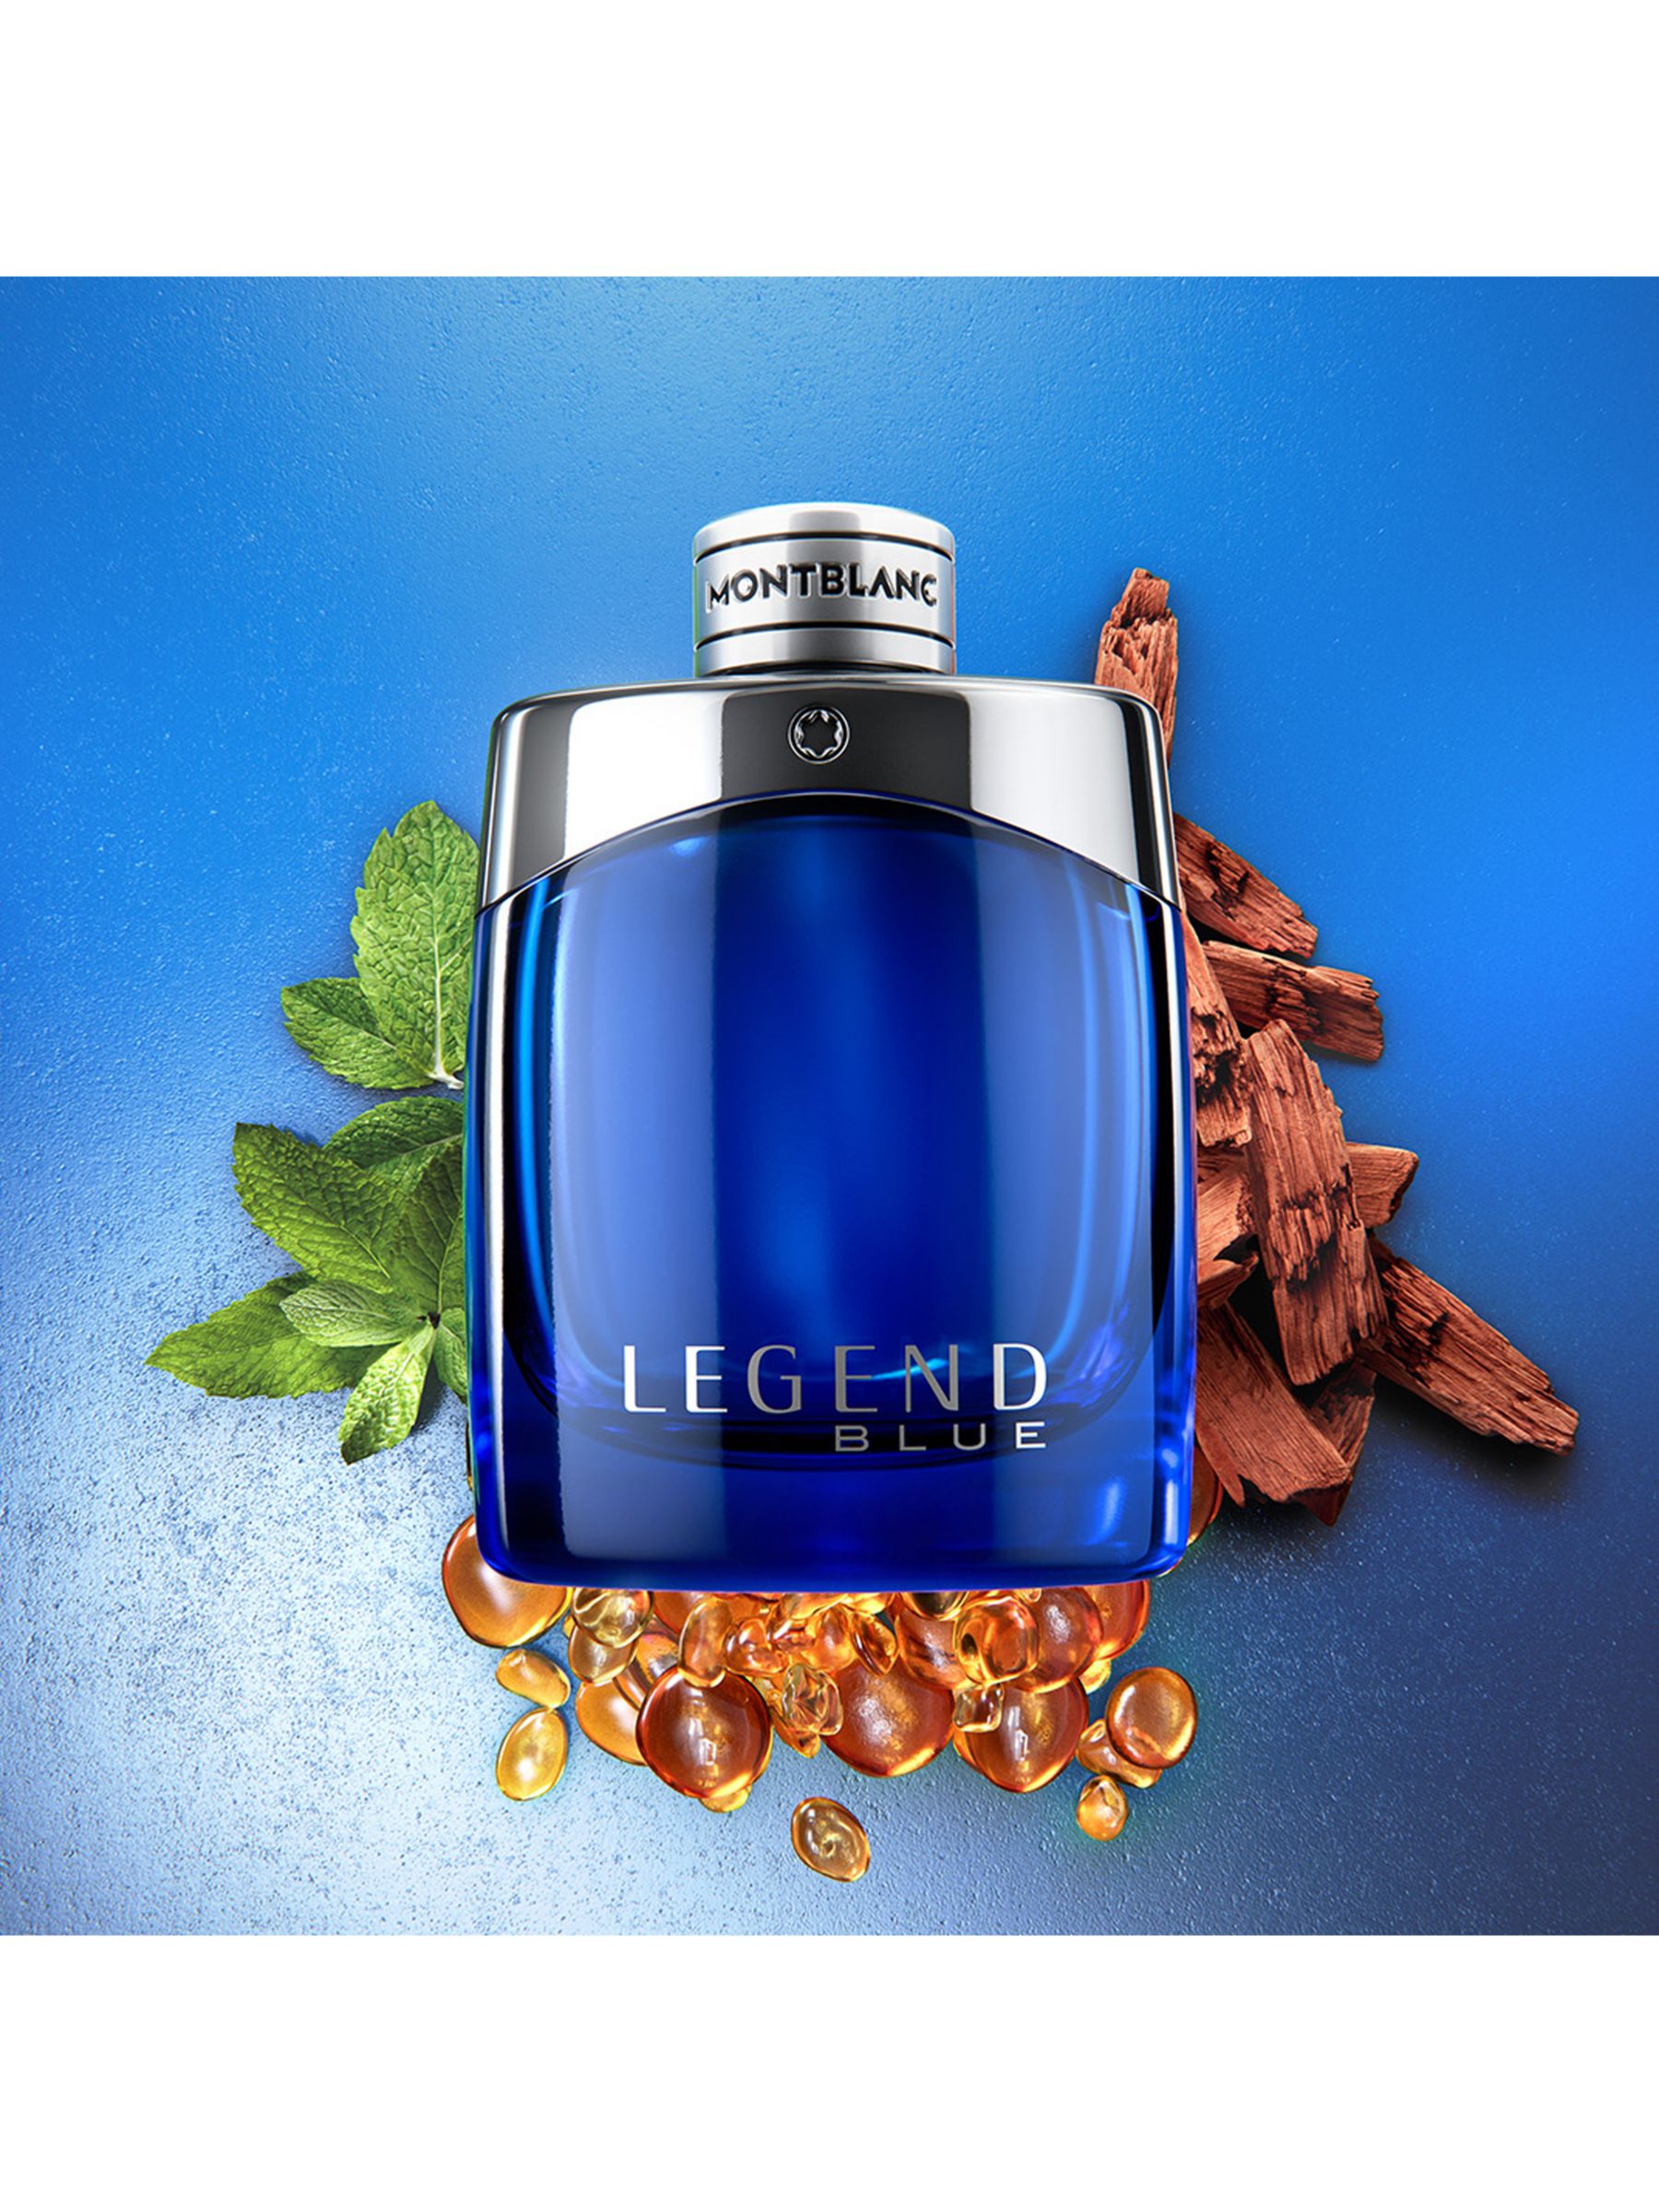 Montblanc Legend Blue Eau de Parfum, 100ml